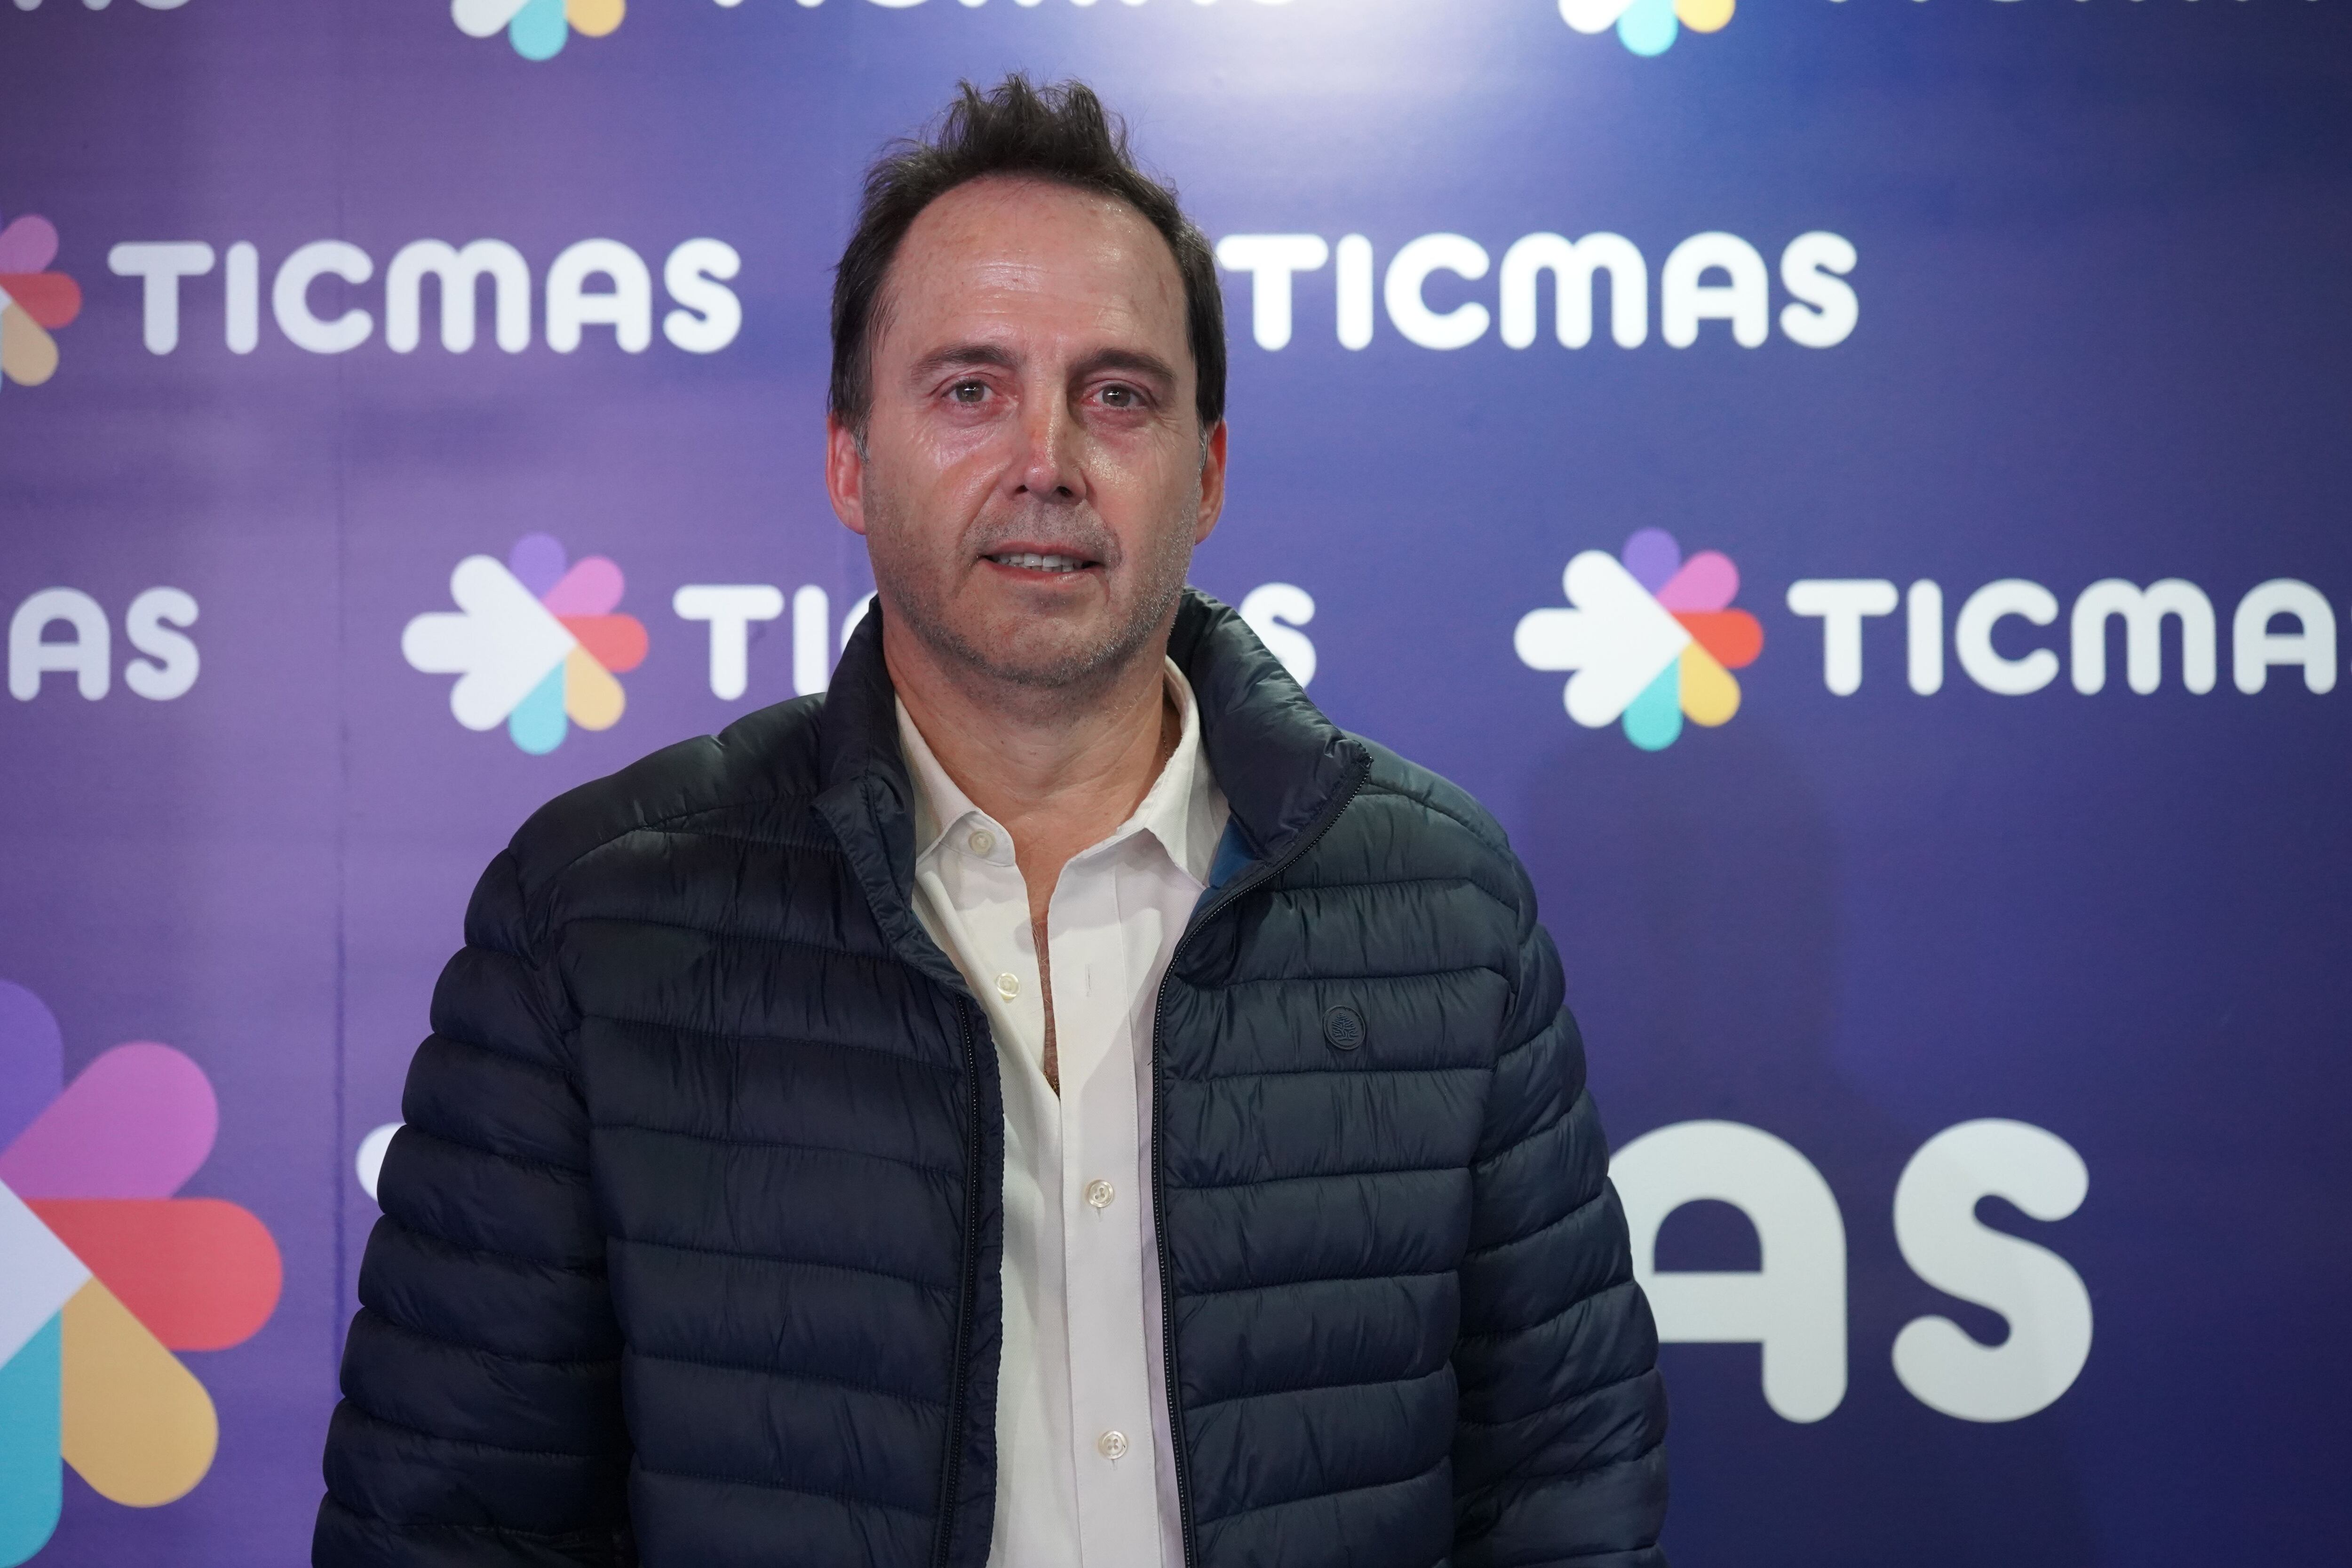 El ministro de educación de Catamarca, Diego Mera (Agustín Brashich/Ticmas)